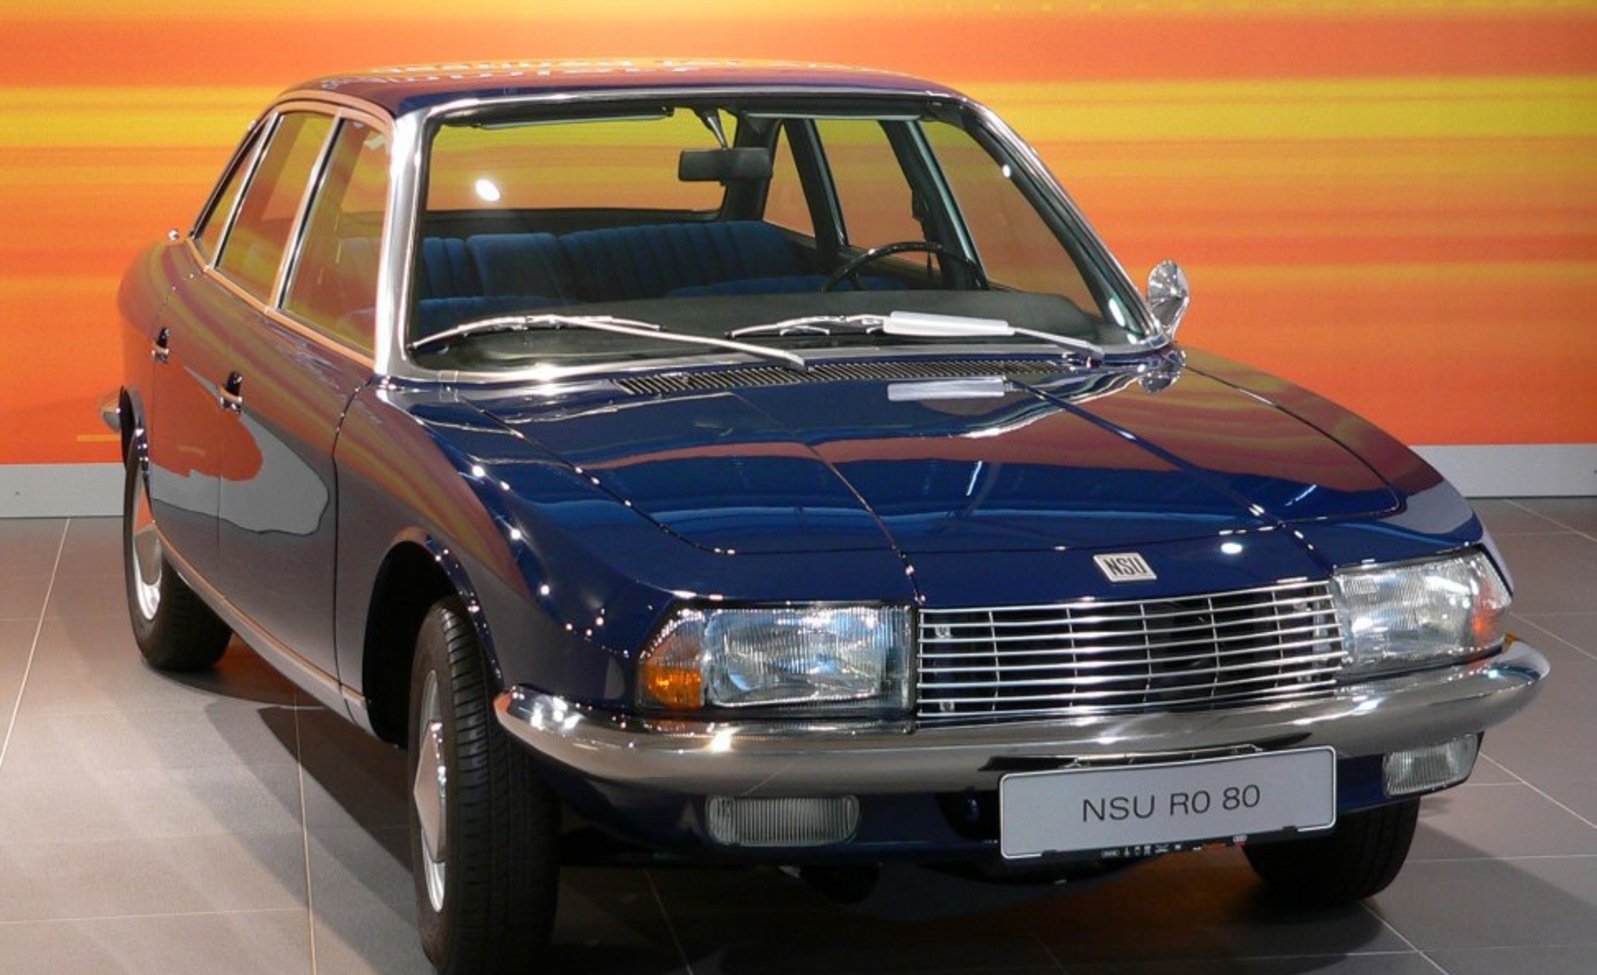 Audi NSU RO 80 1.0 (115 Hp) 1967, 1968, 1969, 1970, 1971, 1972, 1973, 1974, 1975, 1976, 1977 